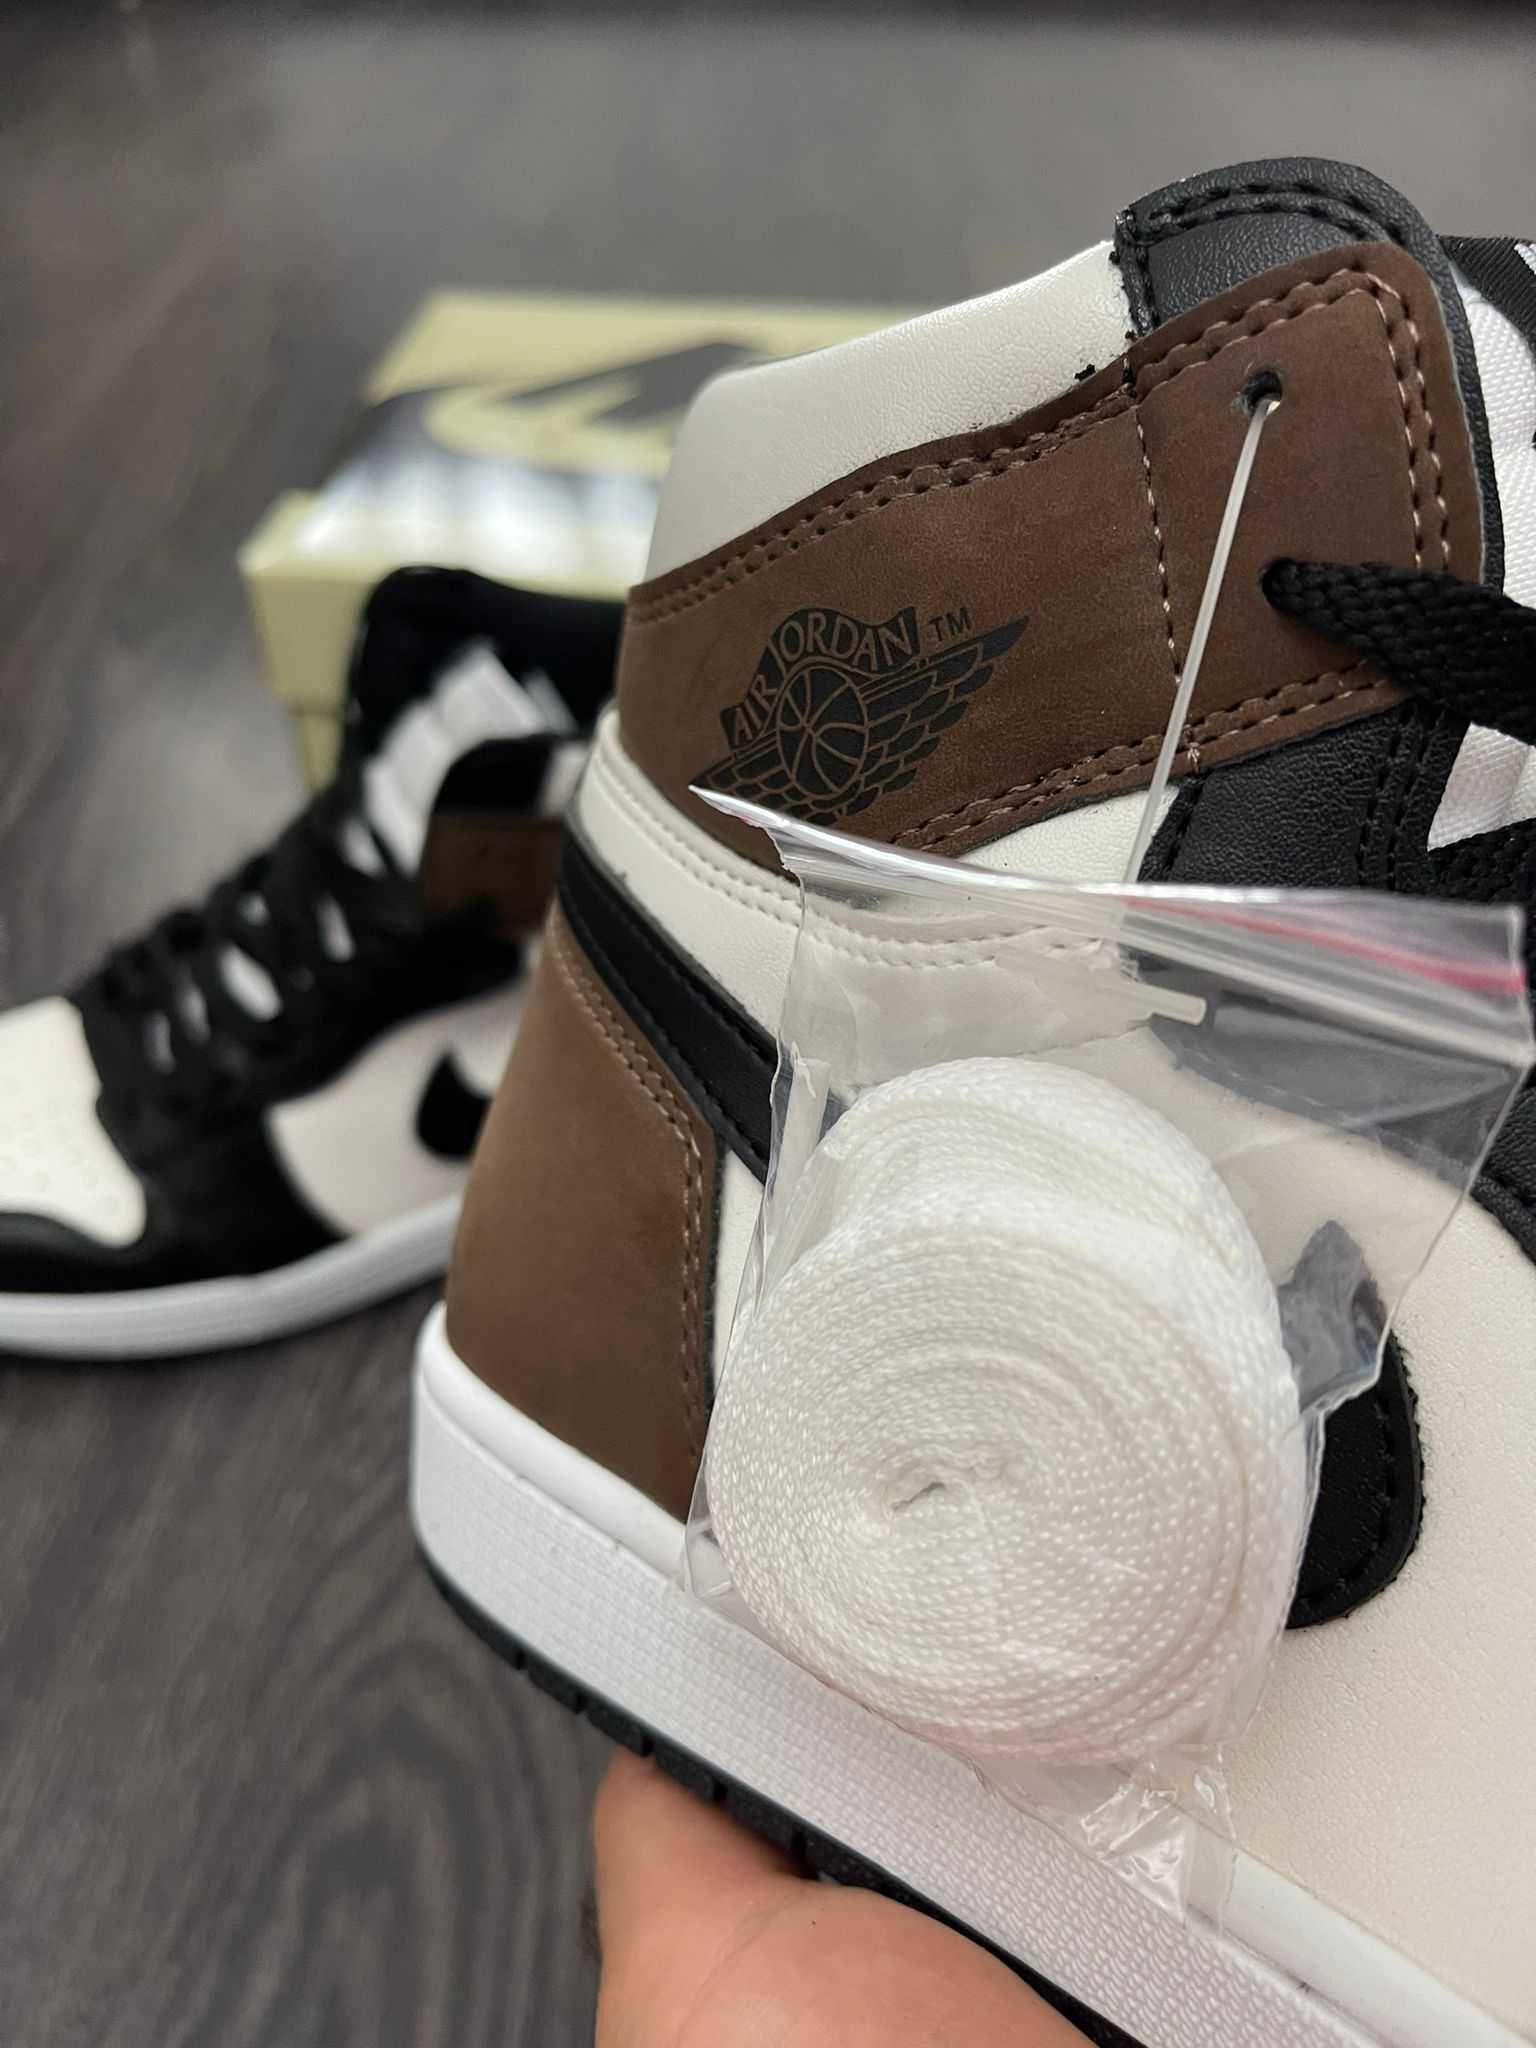 Adidasi Jordan 1 High Dark Mocha | New with box | Marimi 36-45